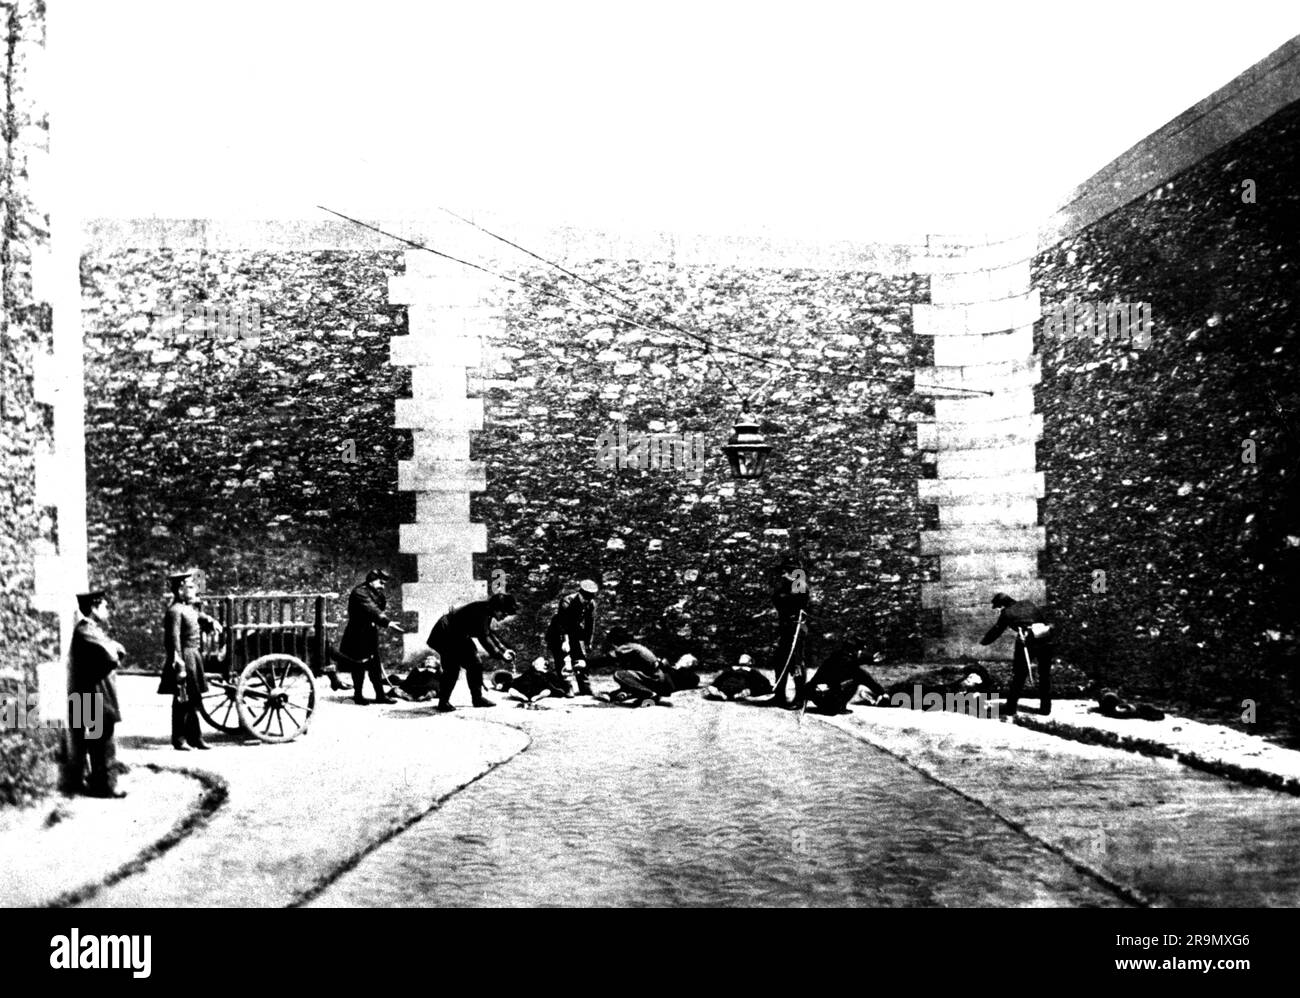 Commune de Paris, 18,3. - 28,5.1871, exécution de communiards dans la prison de la Roquette, 25,5.1871, AUTORISATION-DROITS-SUPPLÉMENTAIRES-INFO-NON-DISPONIBLE Banque D'Images